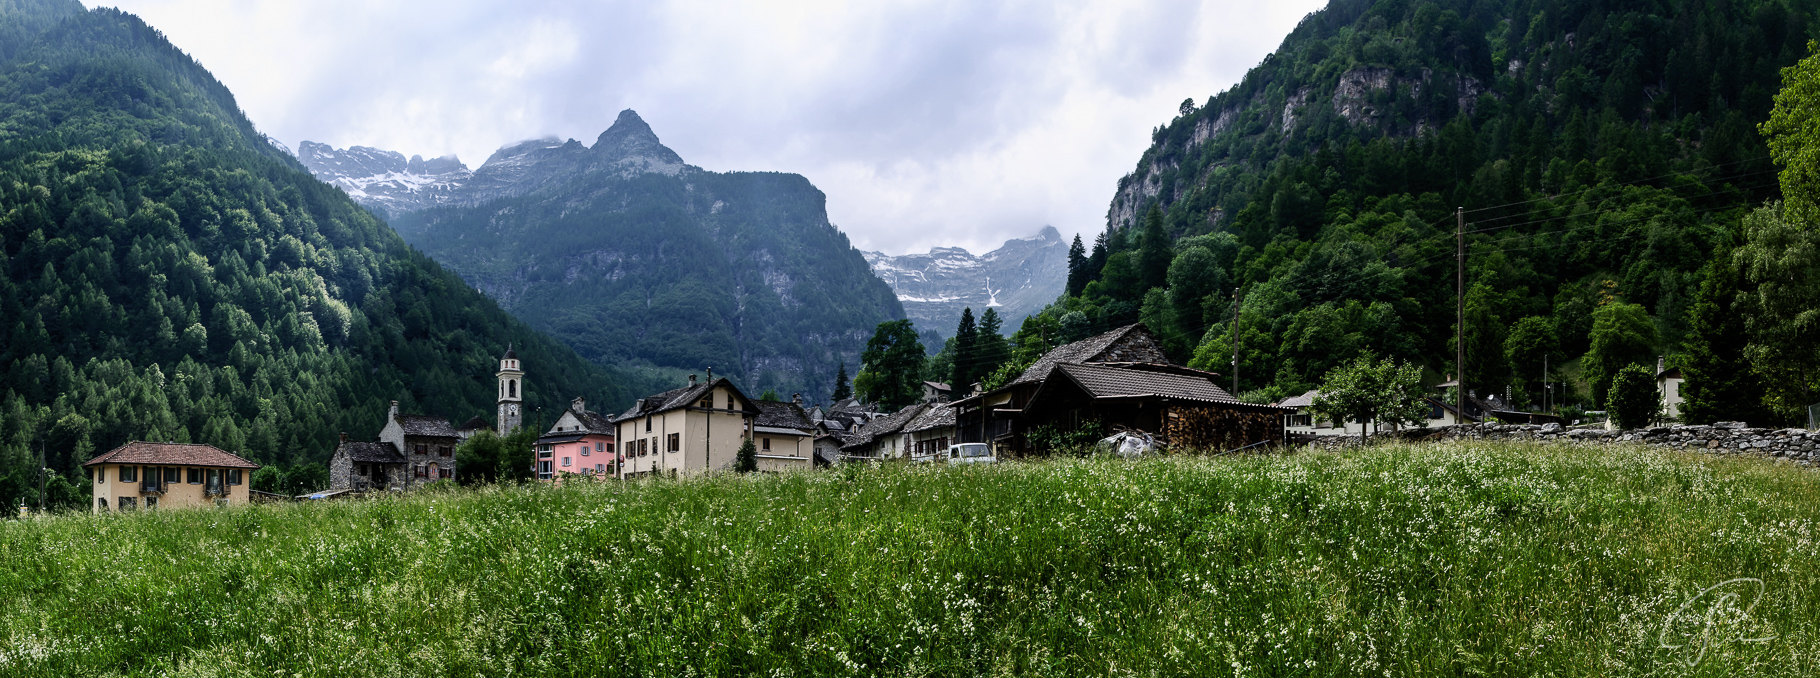 Panormablick auf Sonigno im Valle Verzasca Tessin Schweiz